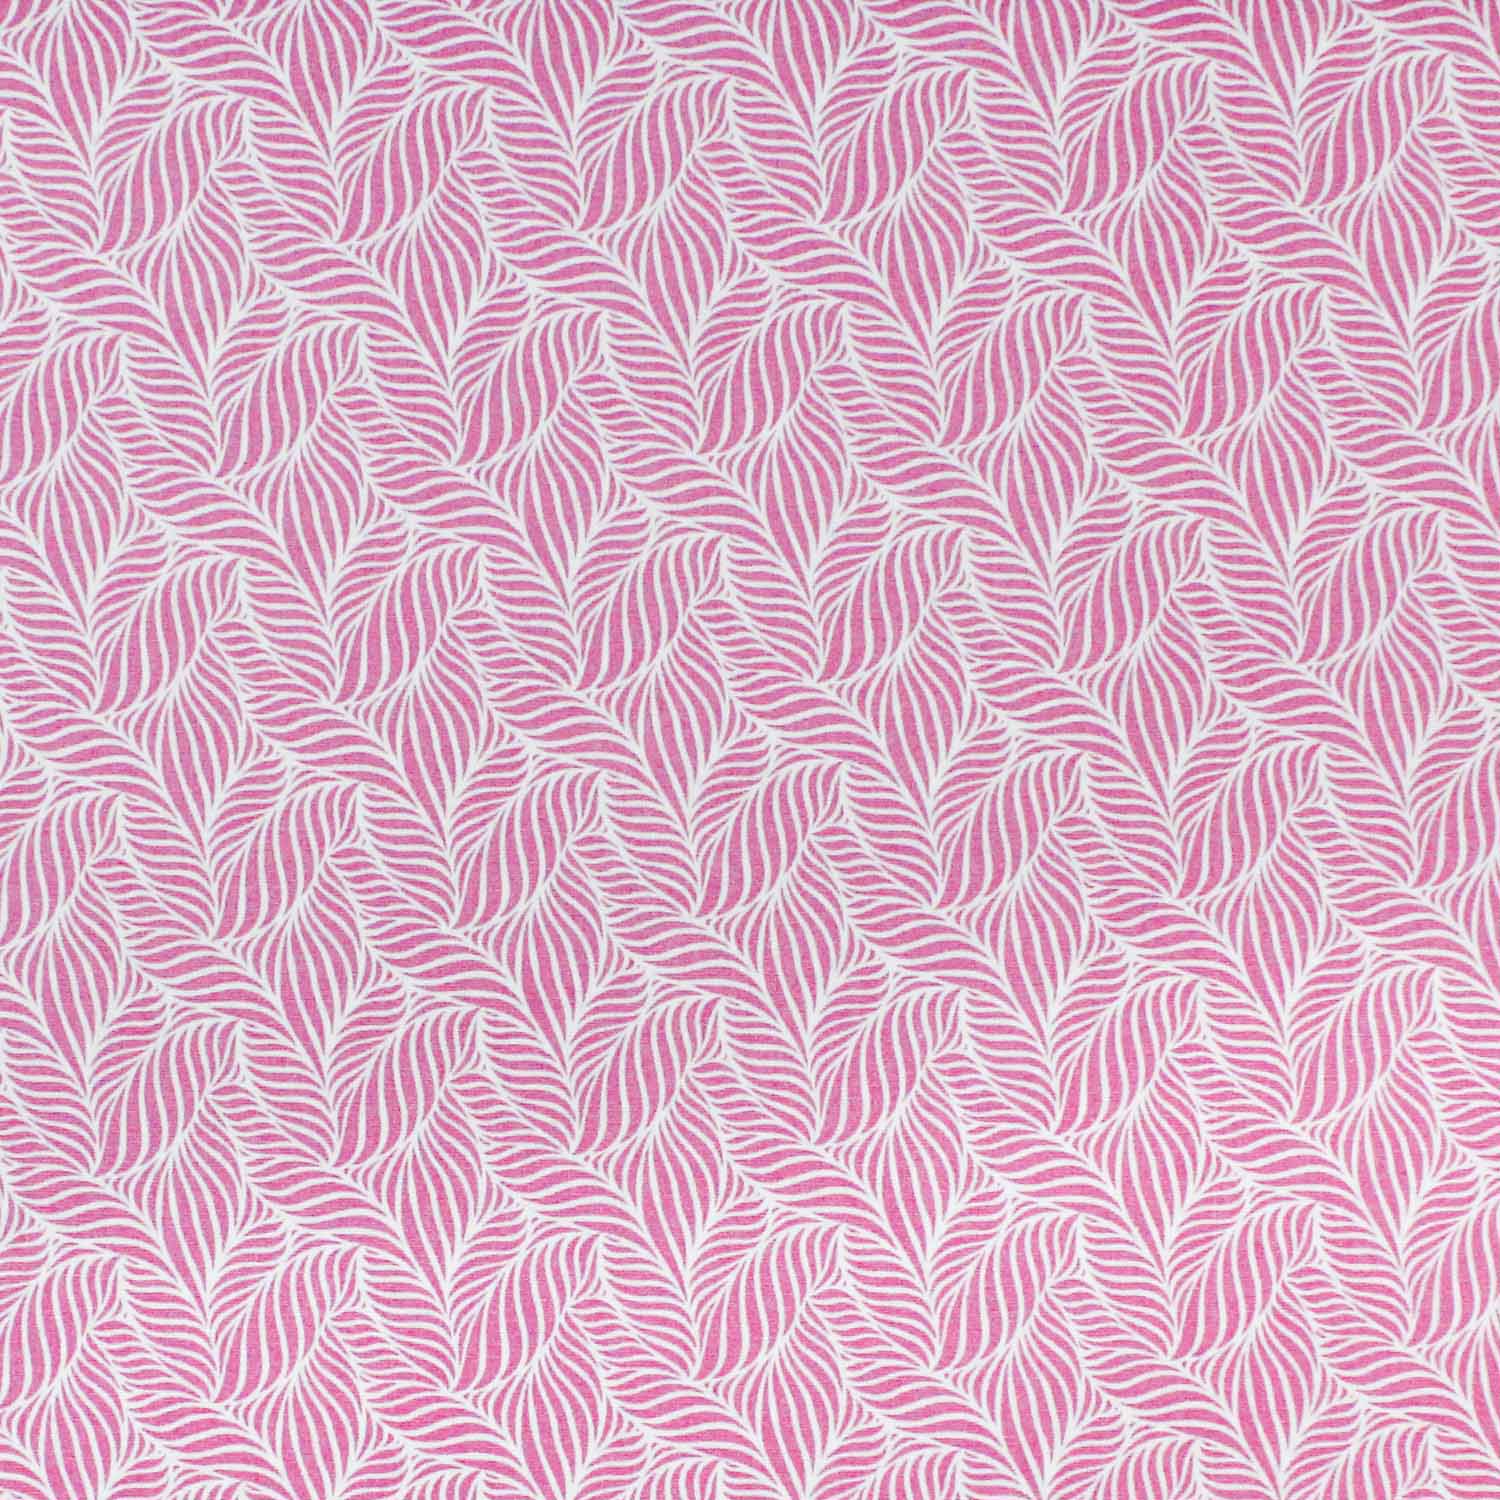 tecido-tricoline-textura-folha-rosa-della-aviamentos-10947